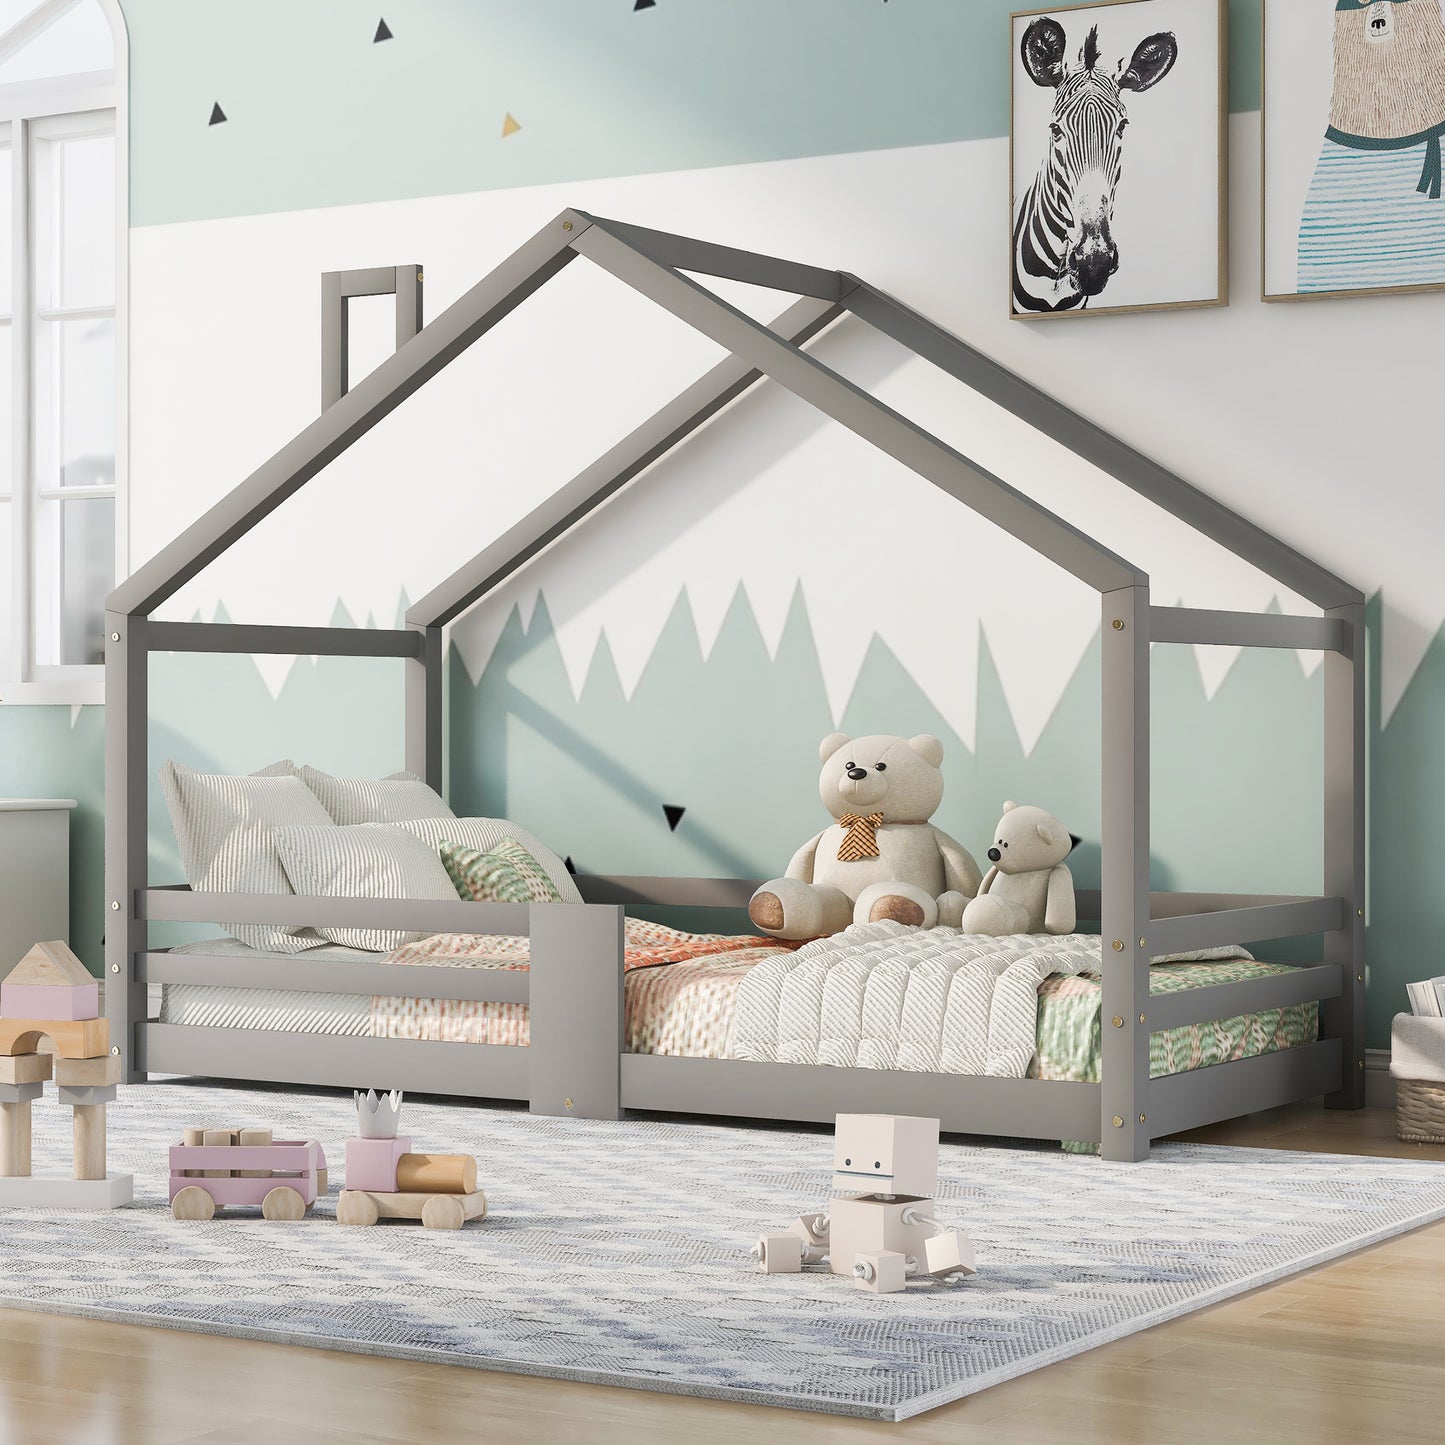 Barnsäng,Säng90 x 200 cm utan madrass, grå